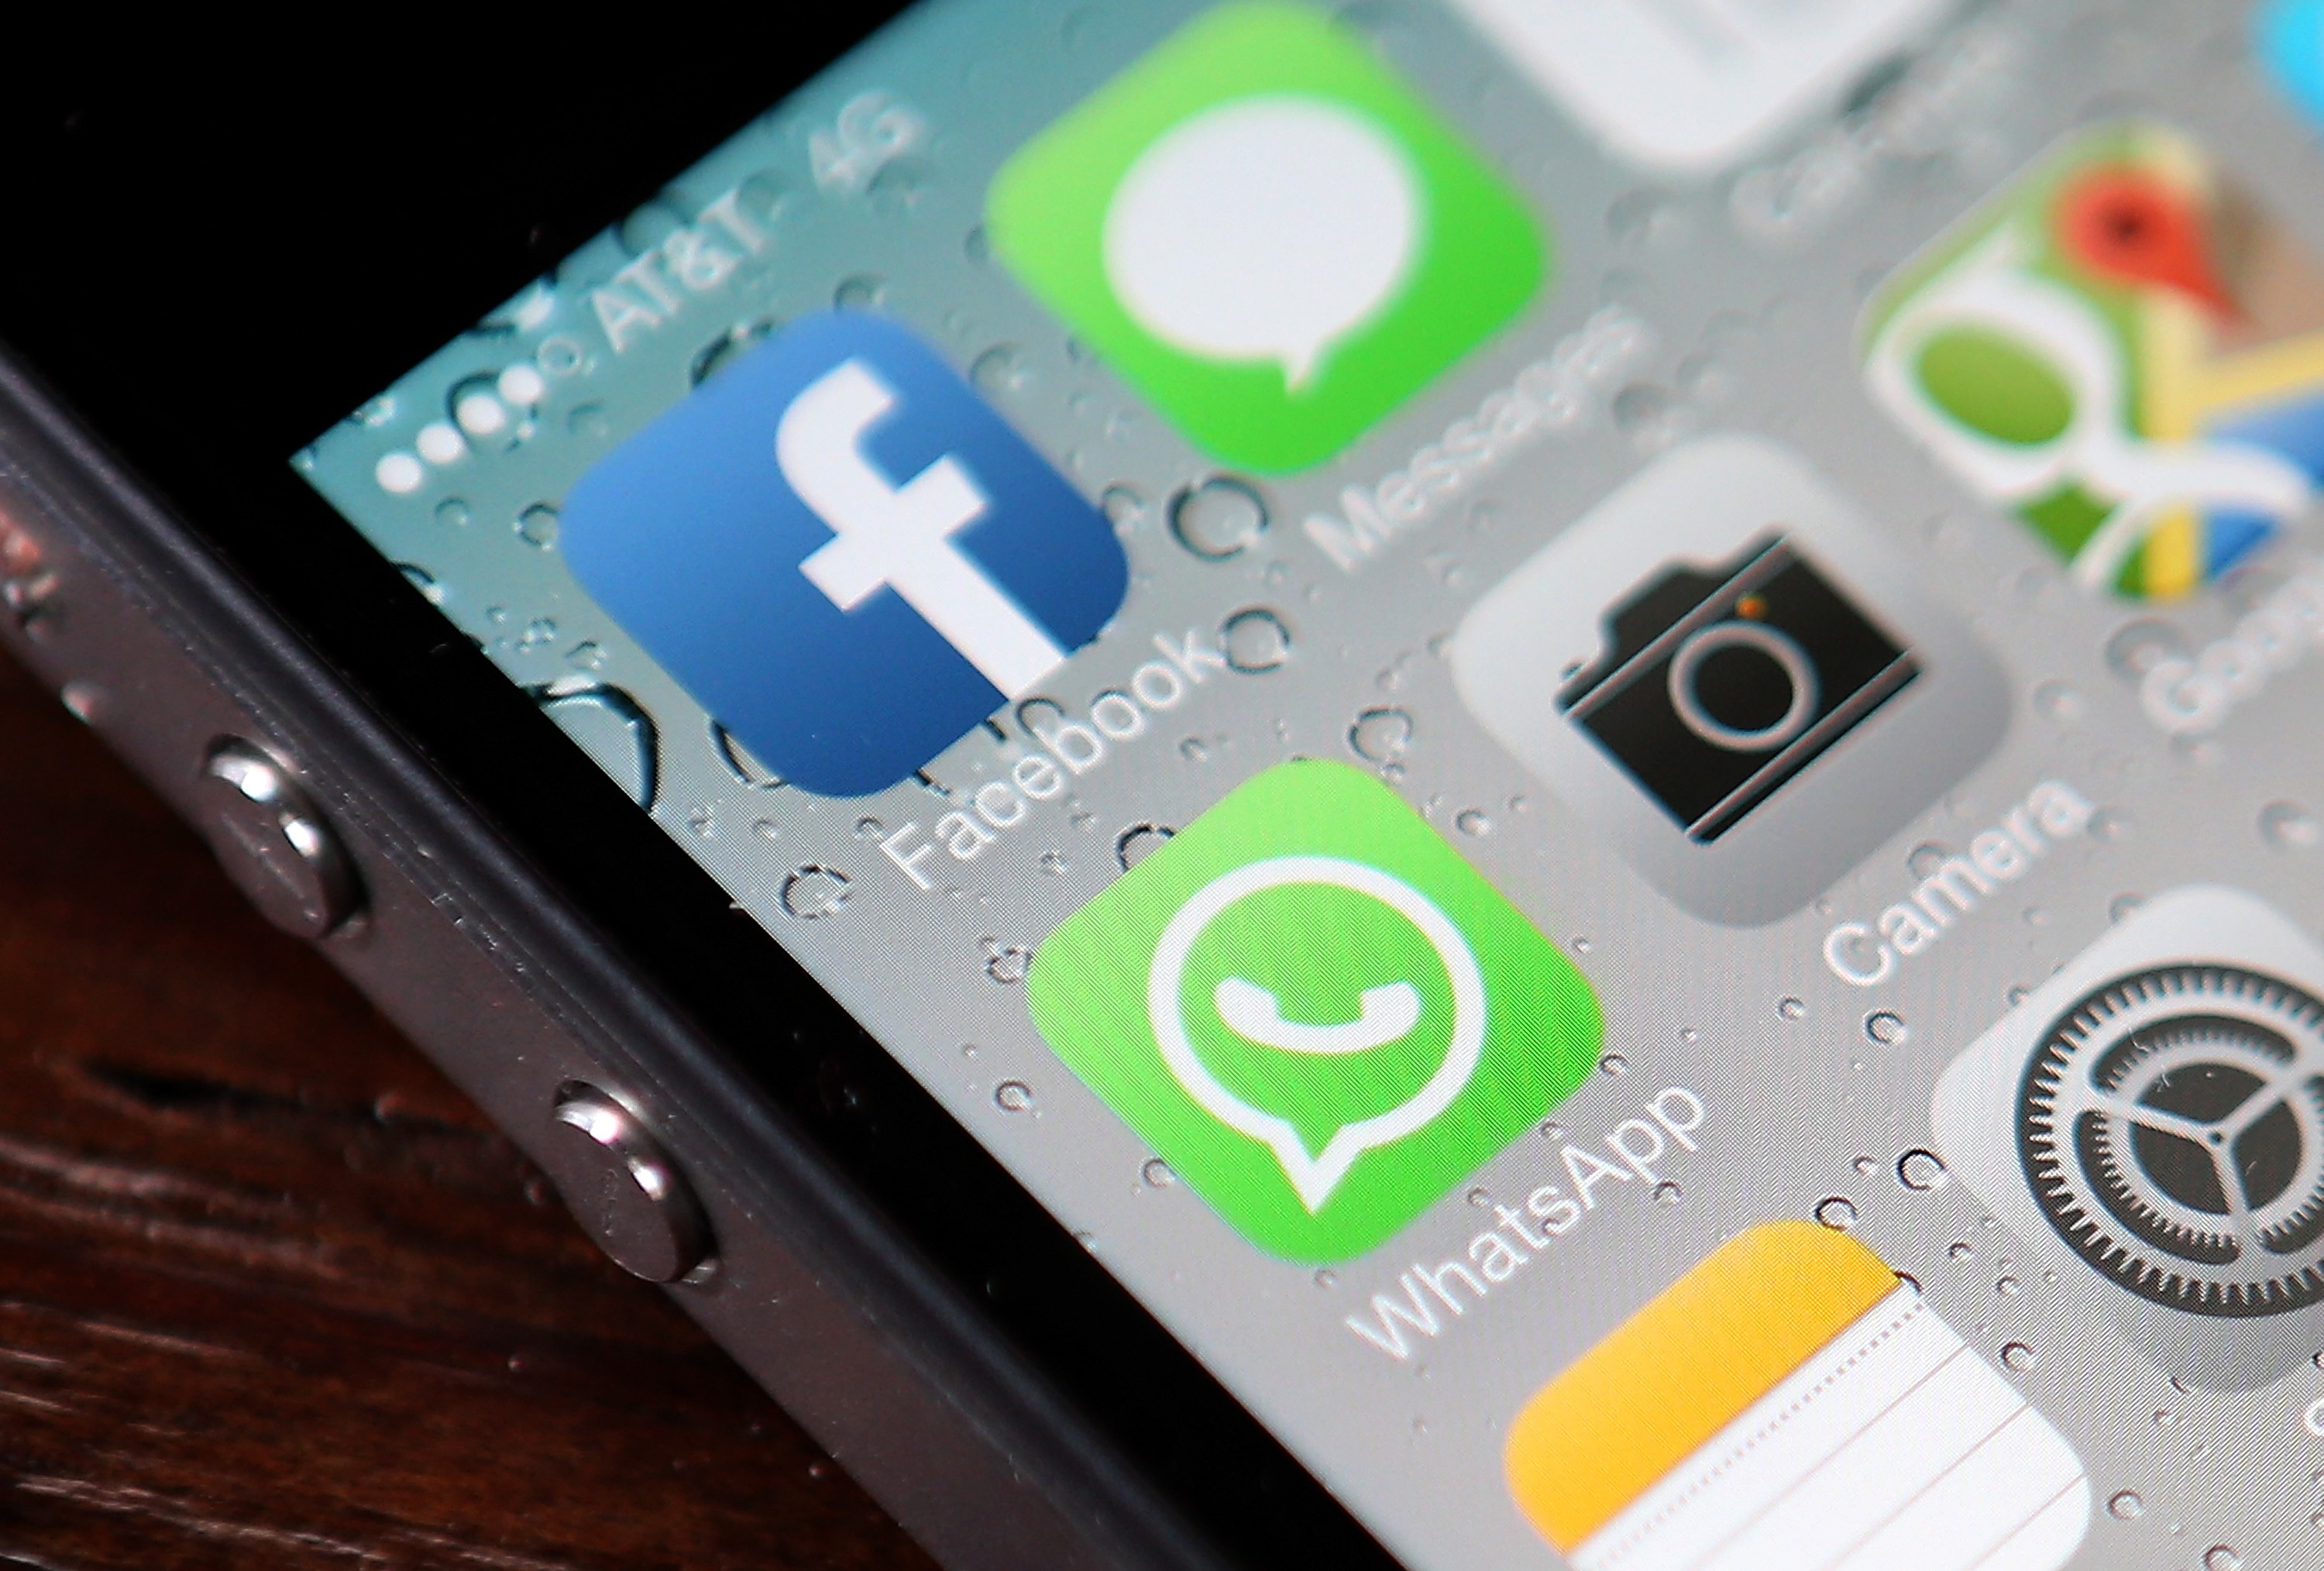 Aplicativos em celular do tipo iPhone mostram WhatsApp e Facebook (Foto: getty images)